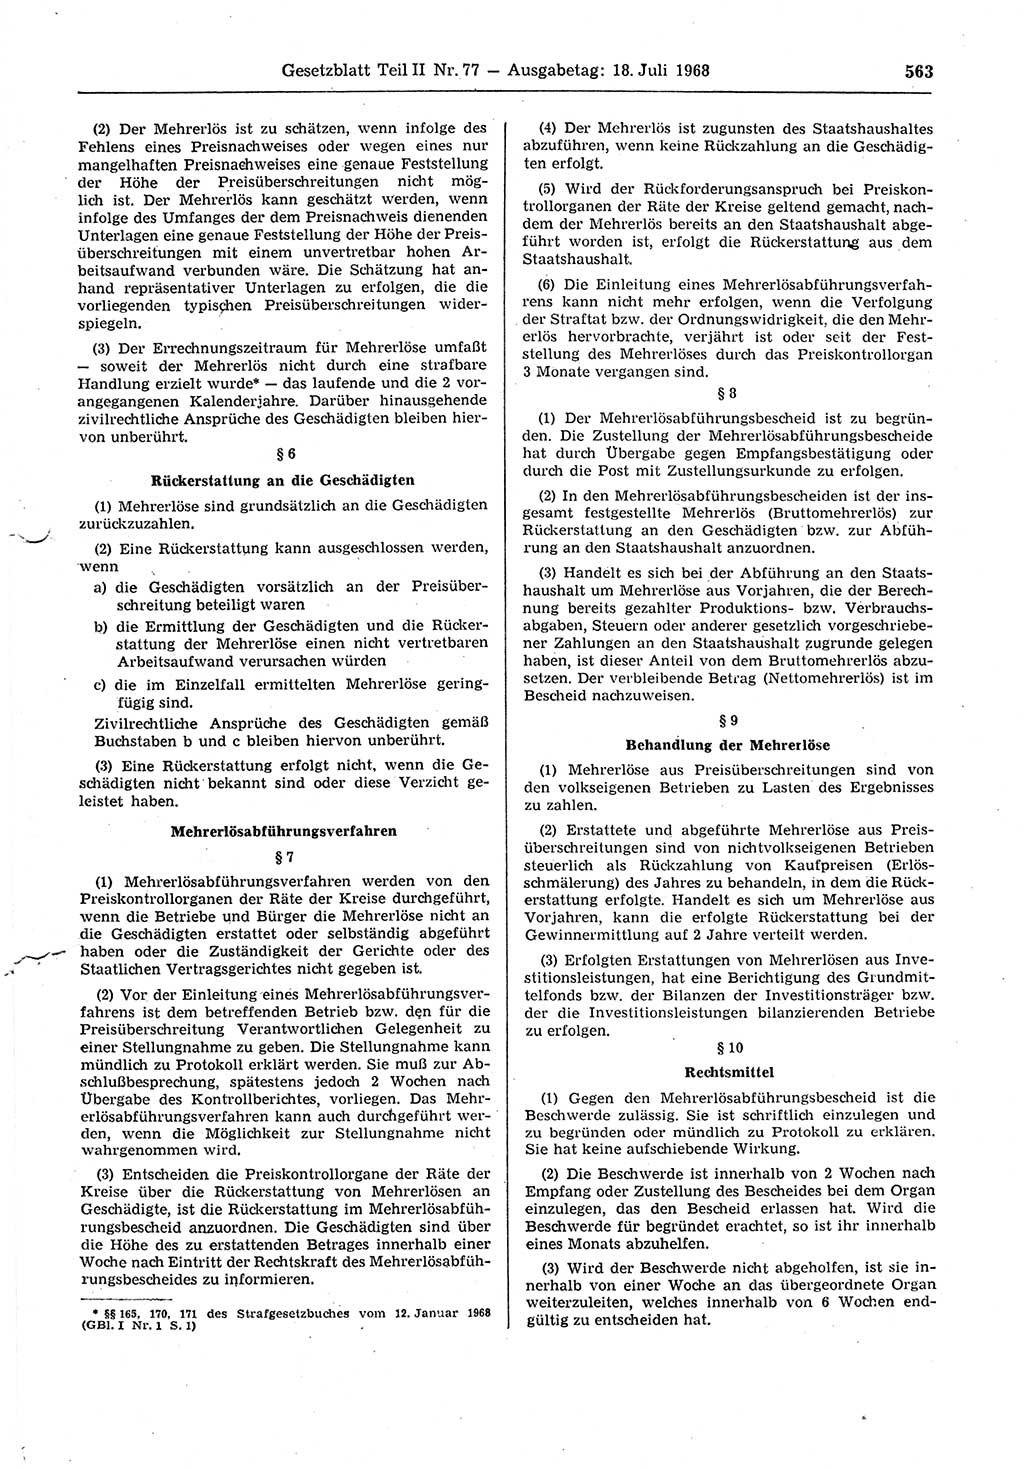 Gesetzblatt (GBl.) der Deutschen Demokratischen Republik (DDR) Teil ⅠⅠ 1968, Seite 563 (GBl. DDR ⅠⅠ 1968, S. 563)